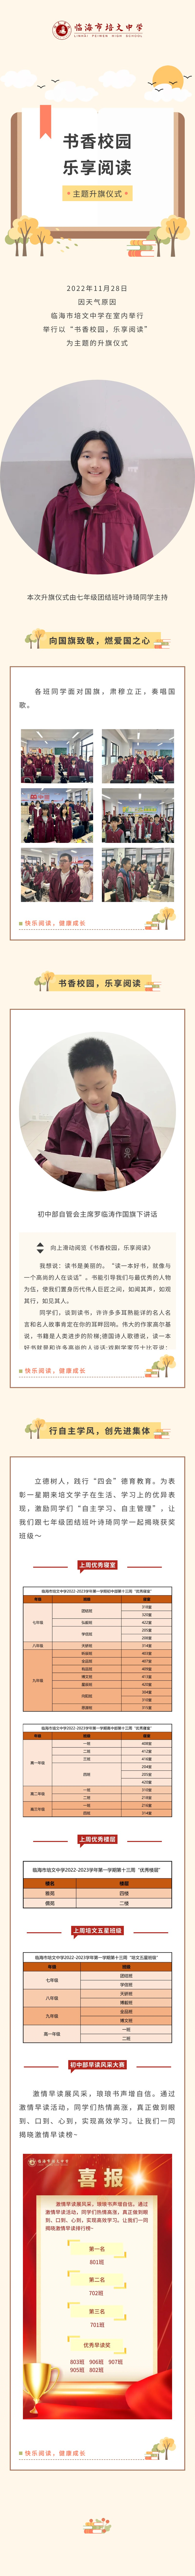 2022-11-28主题升旗仪式  书香校园，乐享阅读.jpg